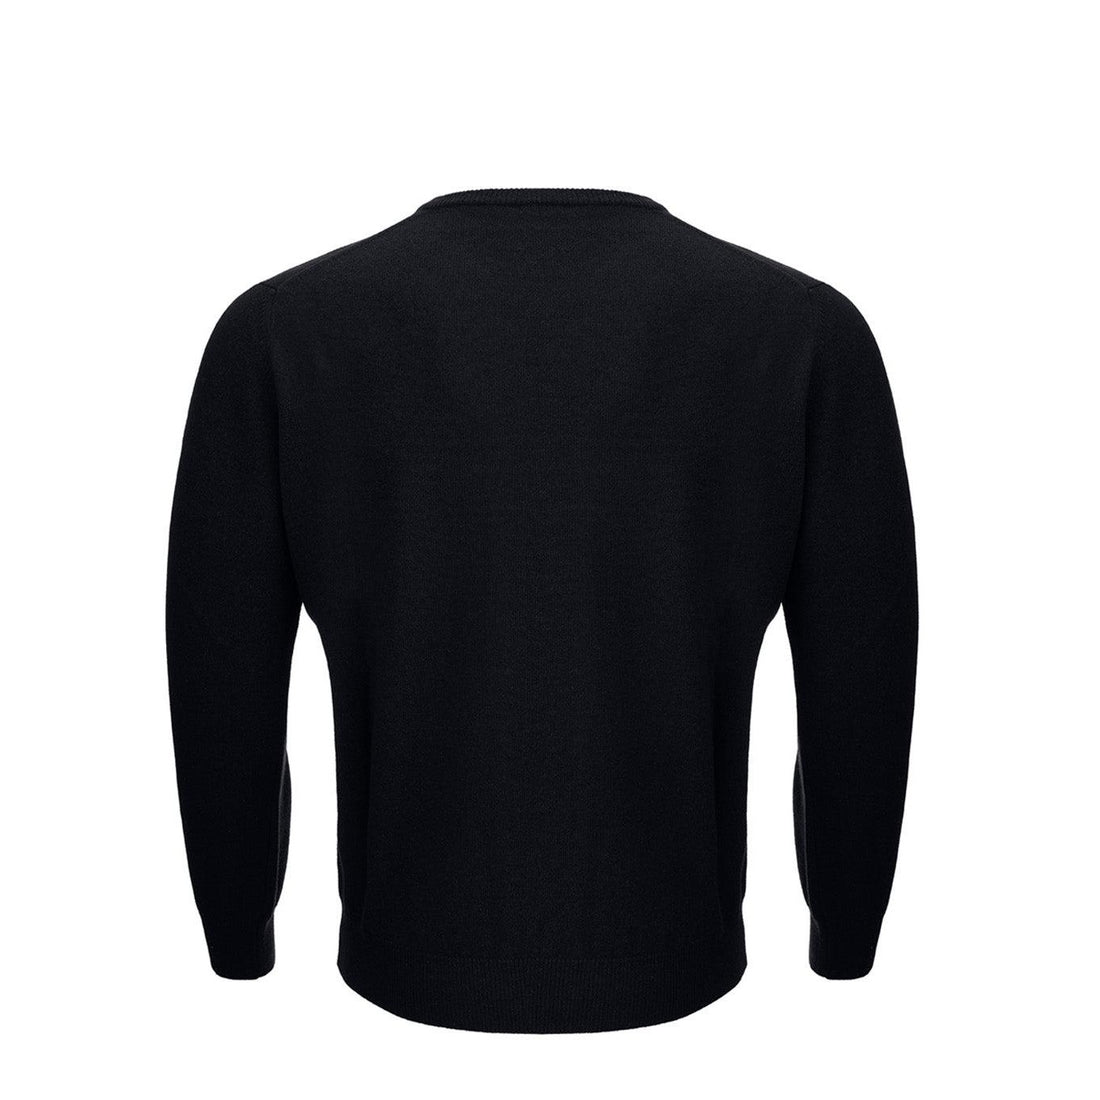 KANGRA Chic Black Wool Blend Round Neck Sweater